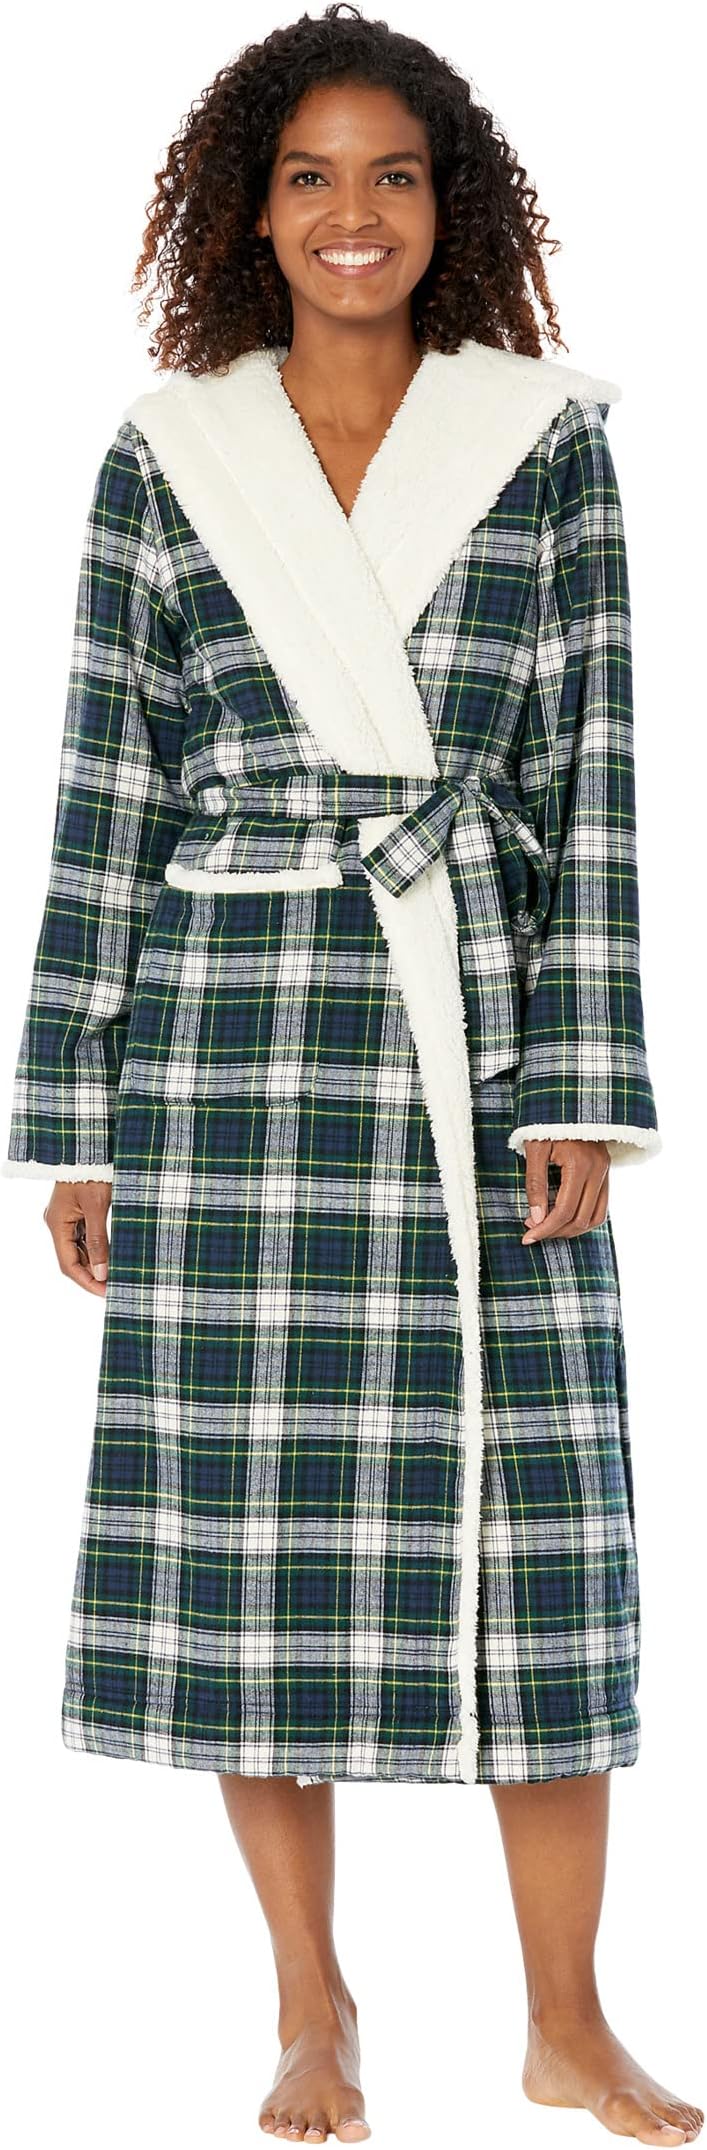 Халат Scotch Plaid Flannel Sherpa Lined Long Robe L.L.Bean, цвет Dress Gordon цена и фото